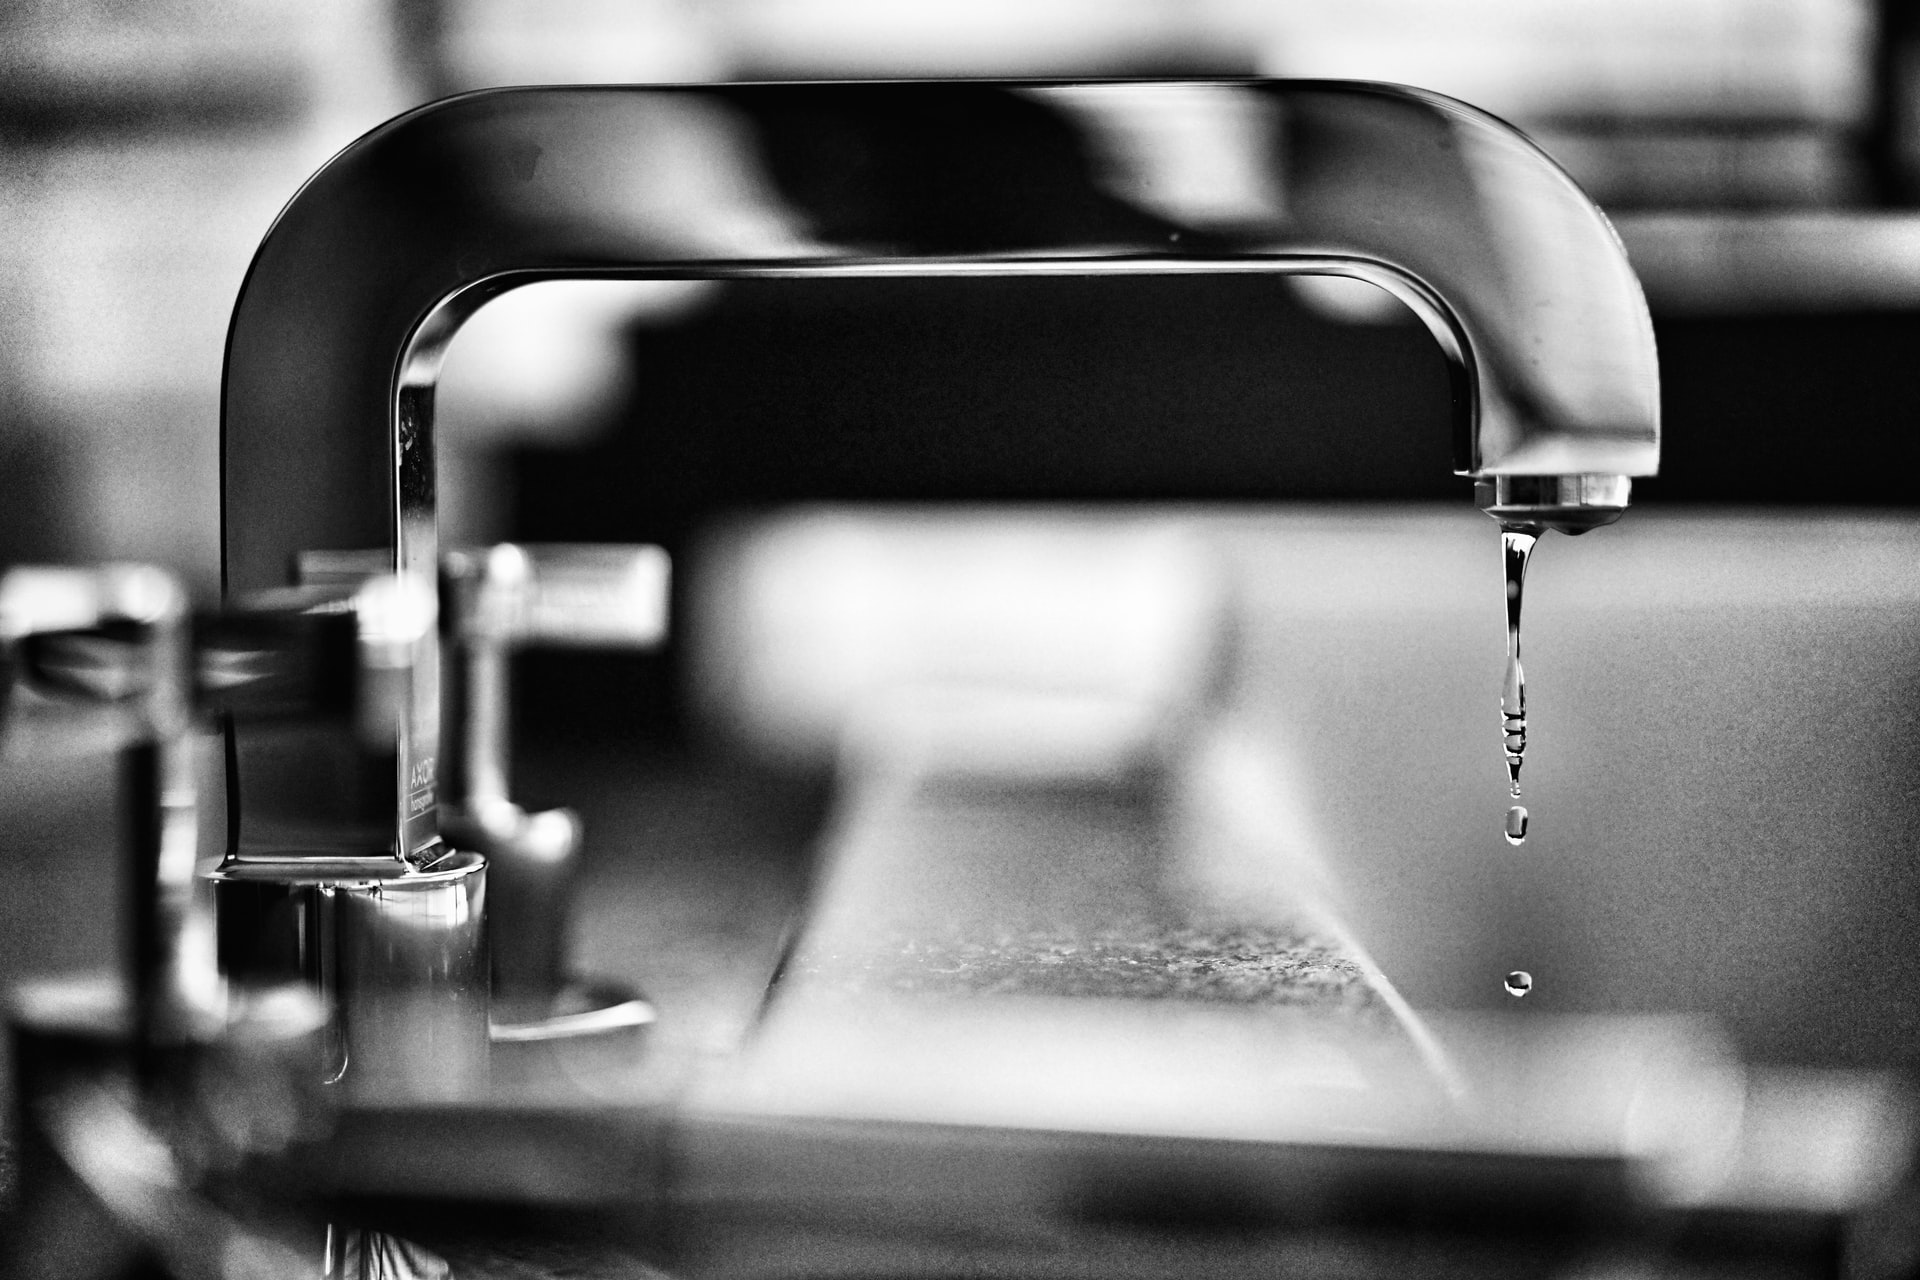 Low water pressure in faucet